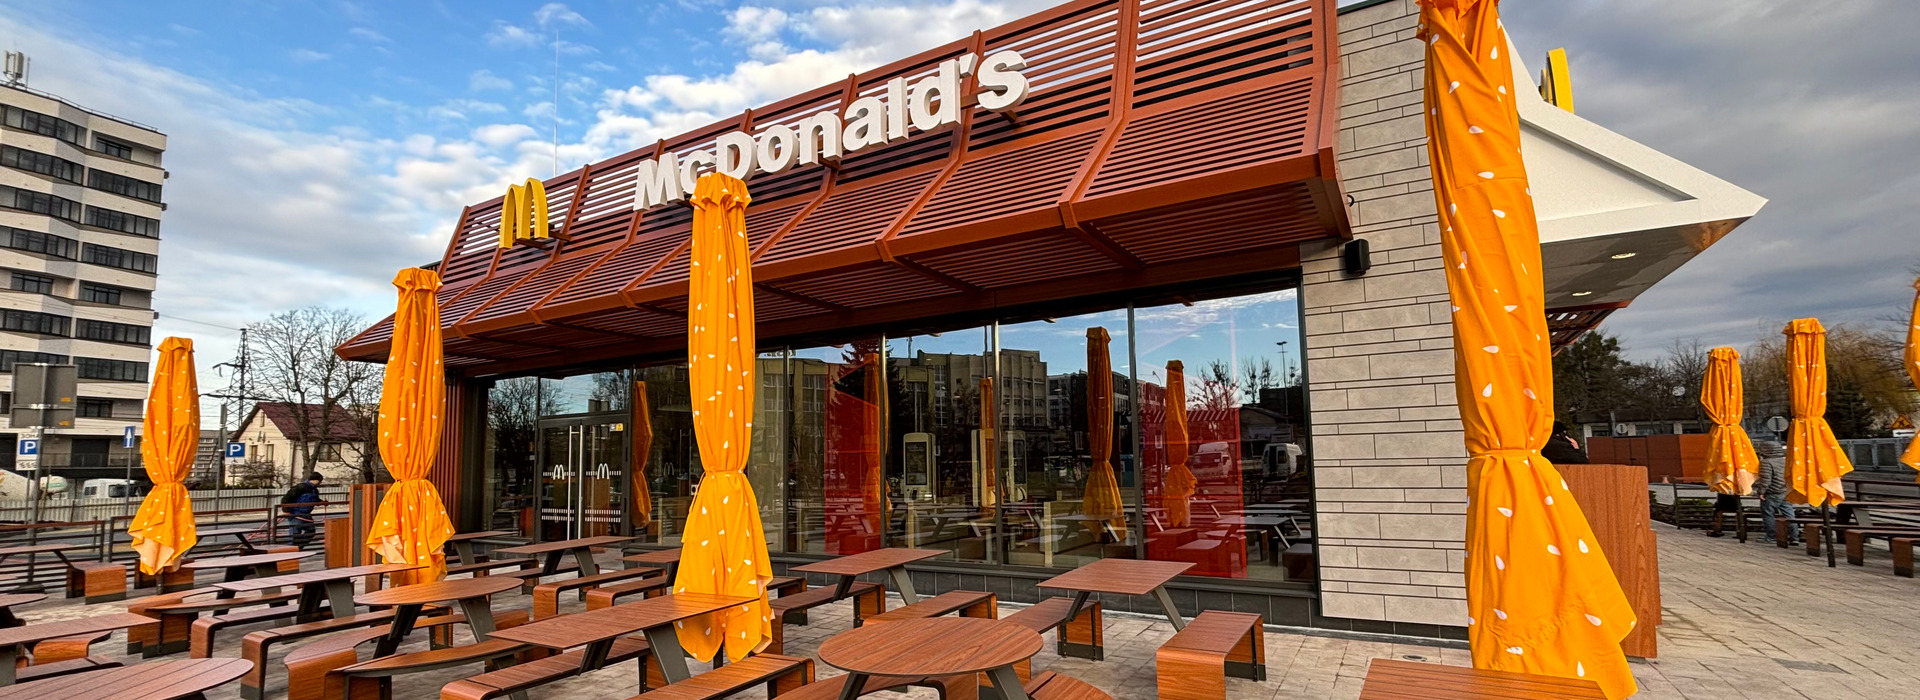 У Львові відкрився восьмий ресторан McDonald’s